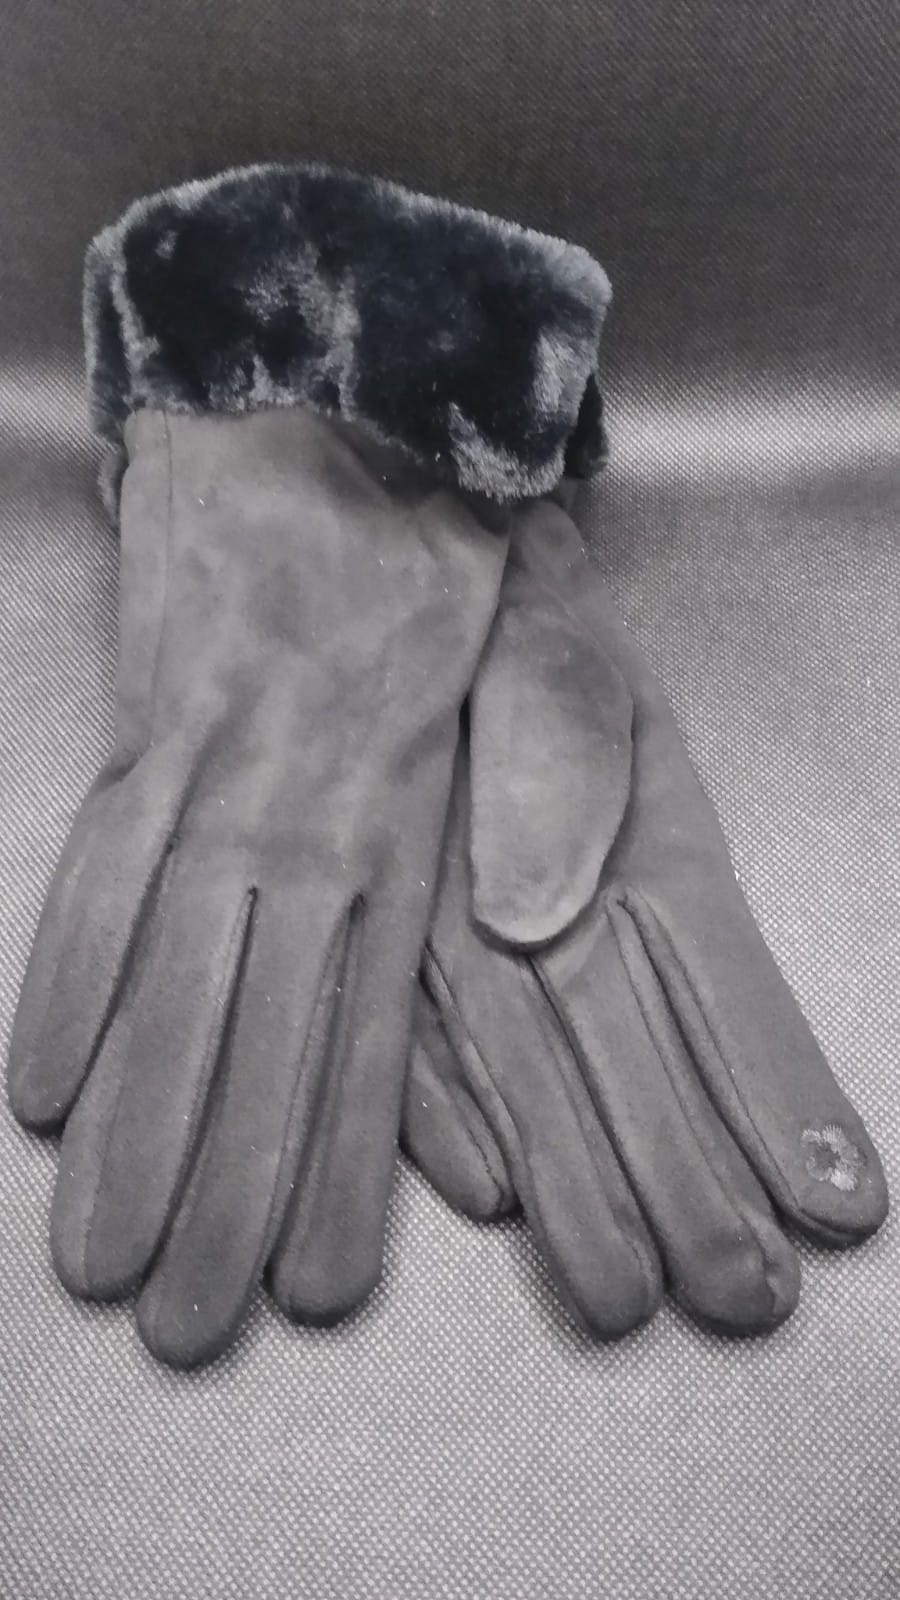 Faux Suede Gloves with Faux Fur Trim